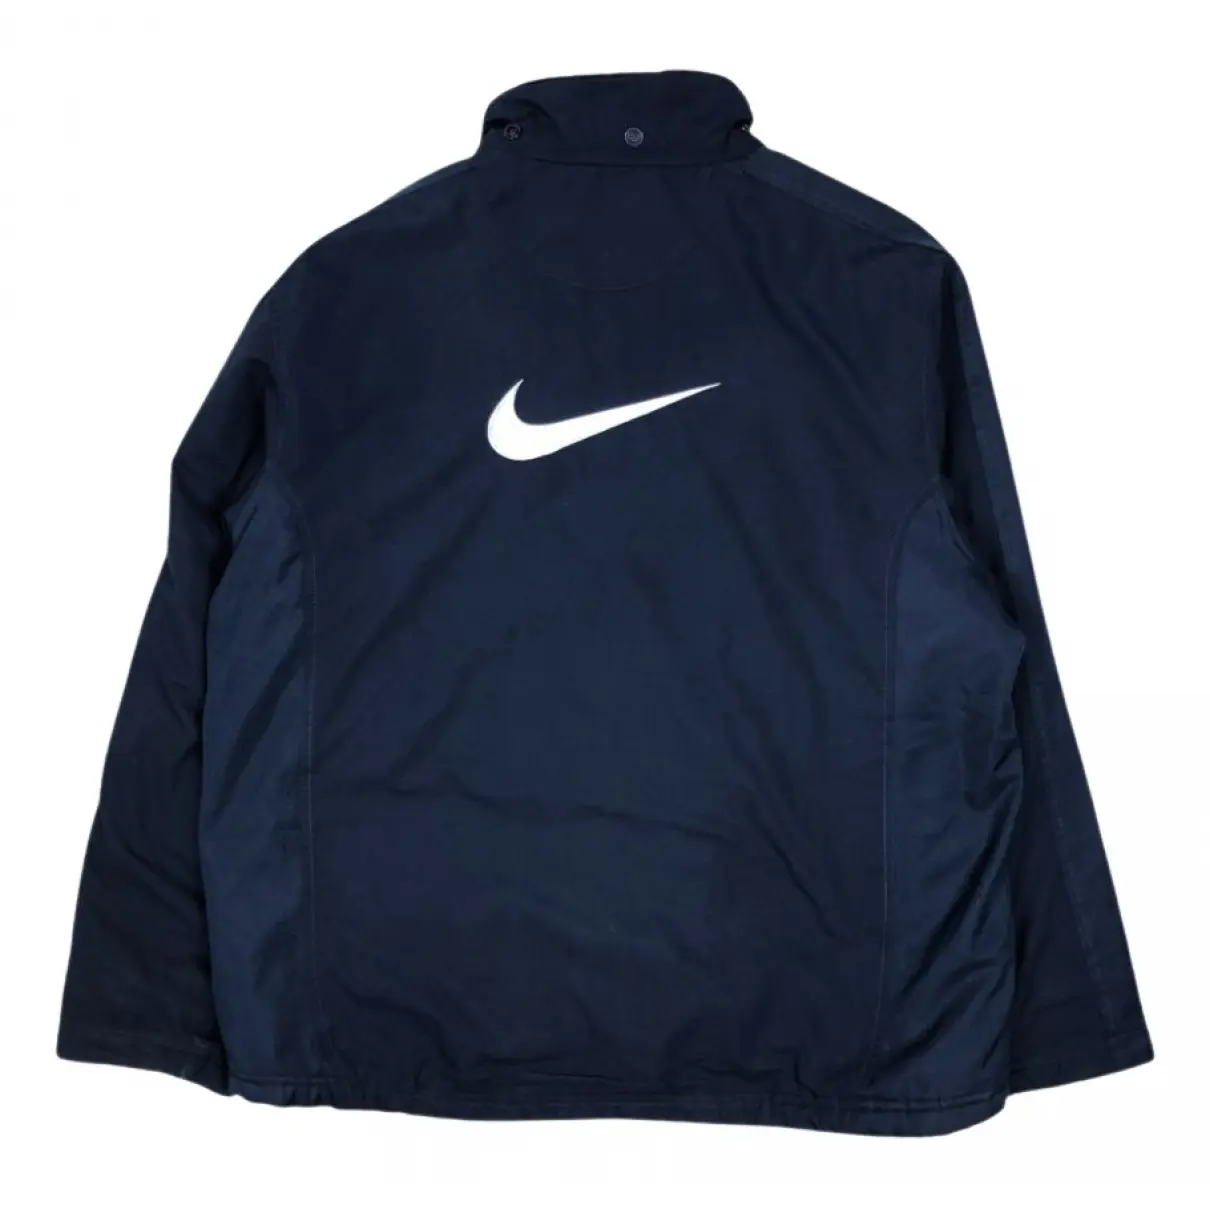 Buy Nike Jacket online - Vintage